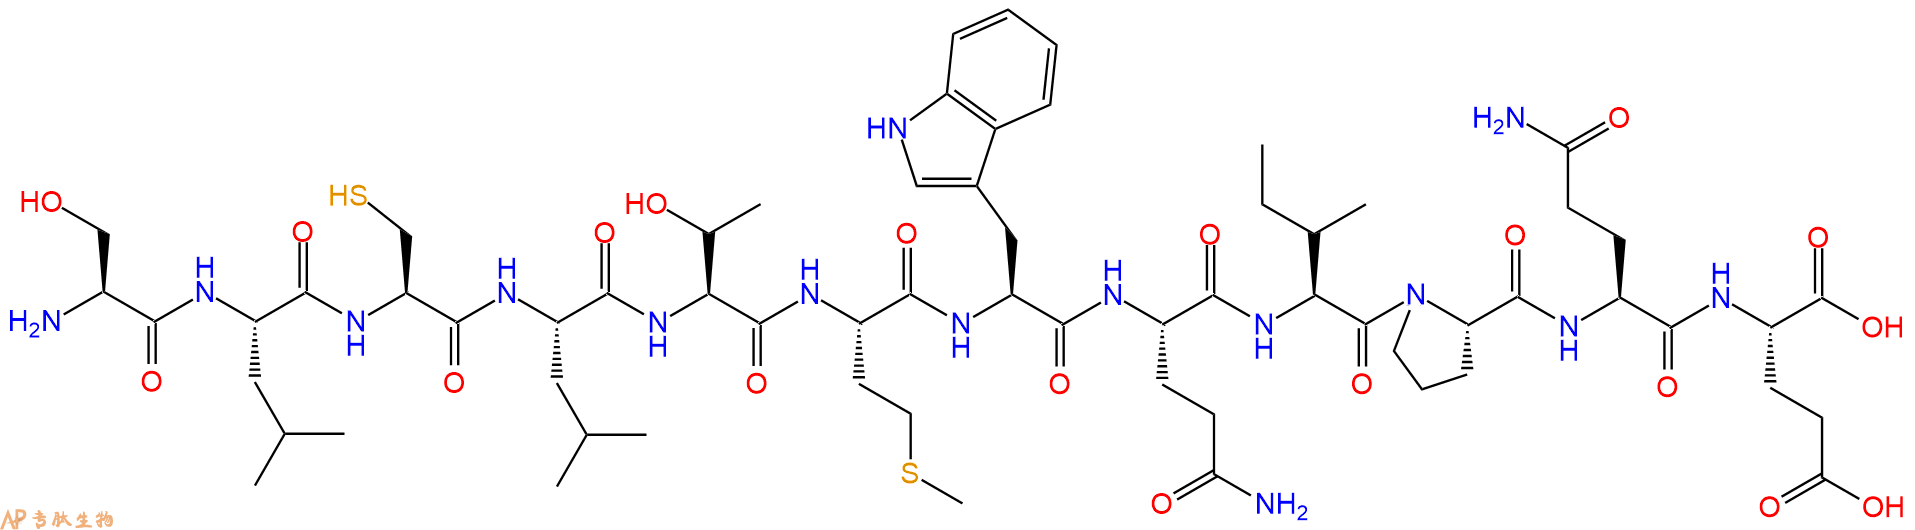 专肽生物产品H2N-Ser-Leu-Cys-Leu-Thr-Met-Trp-Gln-Ile-Pro-Gln-Gl